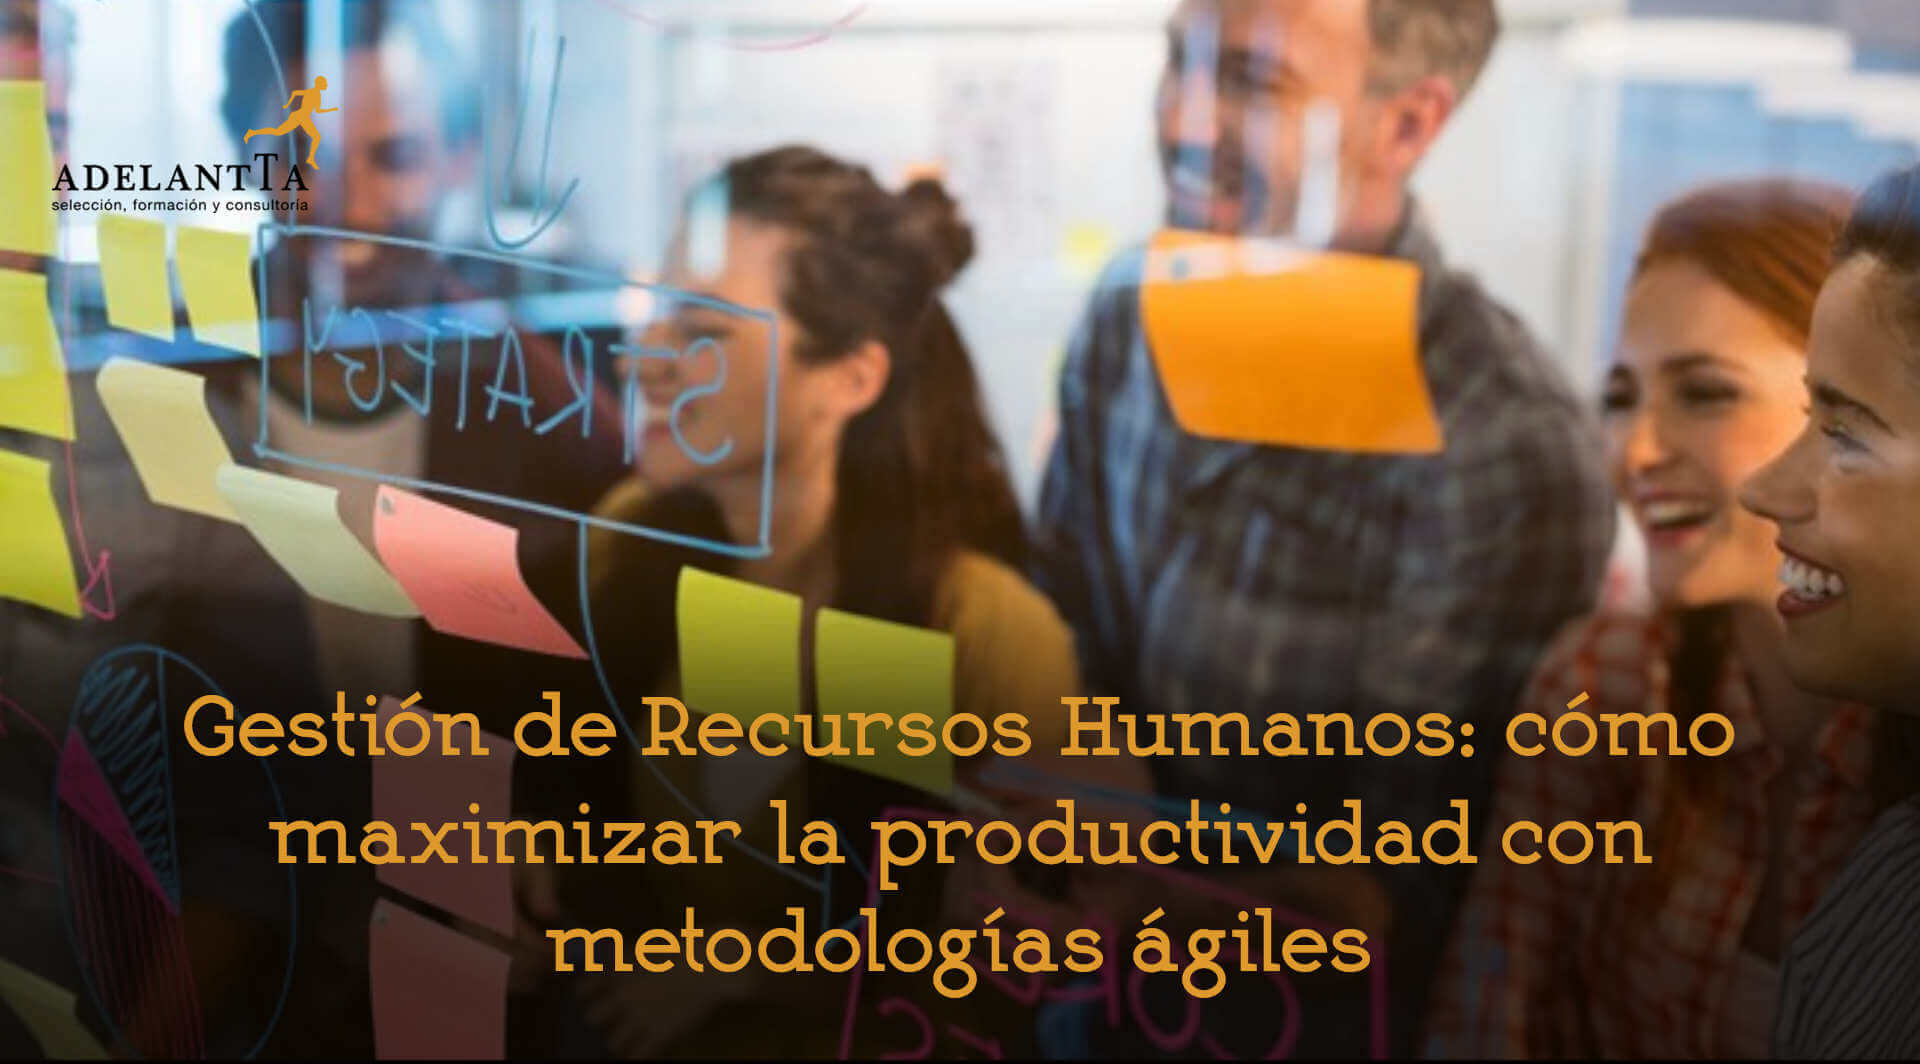 gestion recursos humanos maximizar productividad con metodologia agiles agile rrhh consultoria formacion talento adelantta